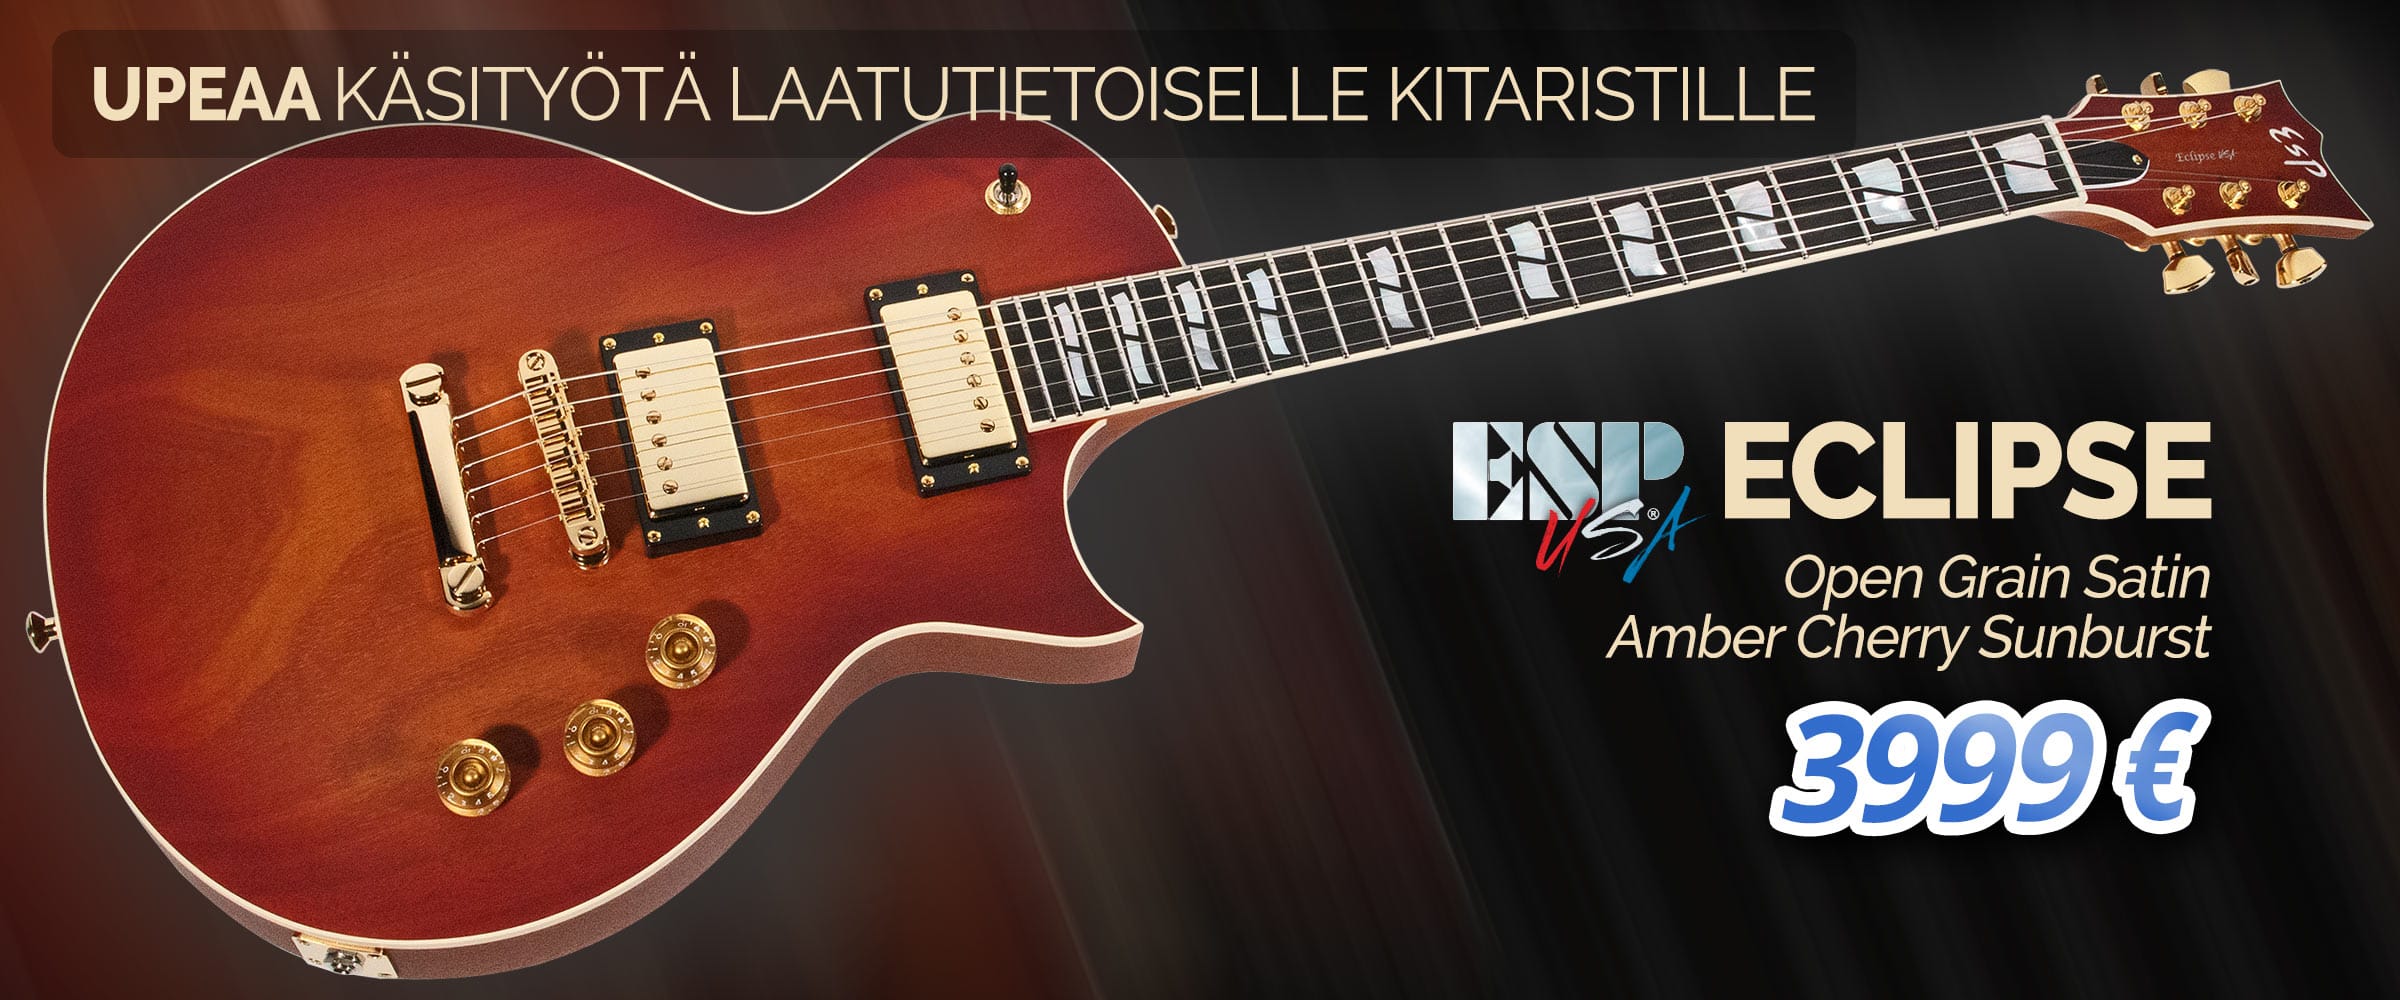 ESP USA Eclipse Open Grain Satin Amber Cherry Sunburst - 3999 € - Upeaa käsityötä laatutietoiselle kitaristille